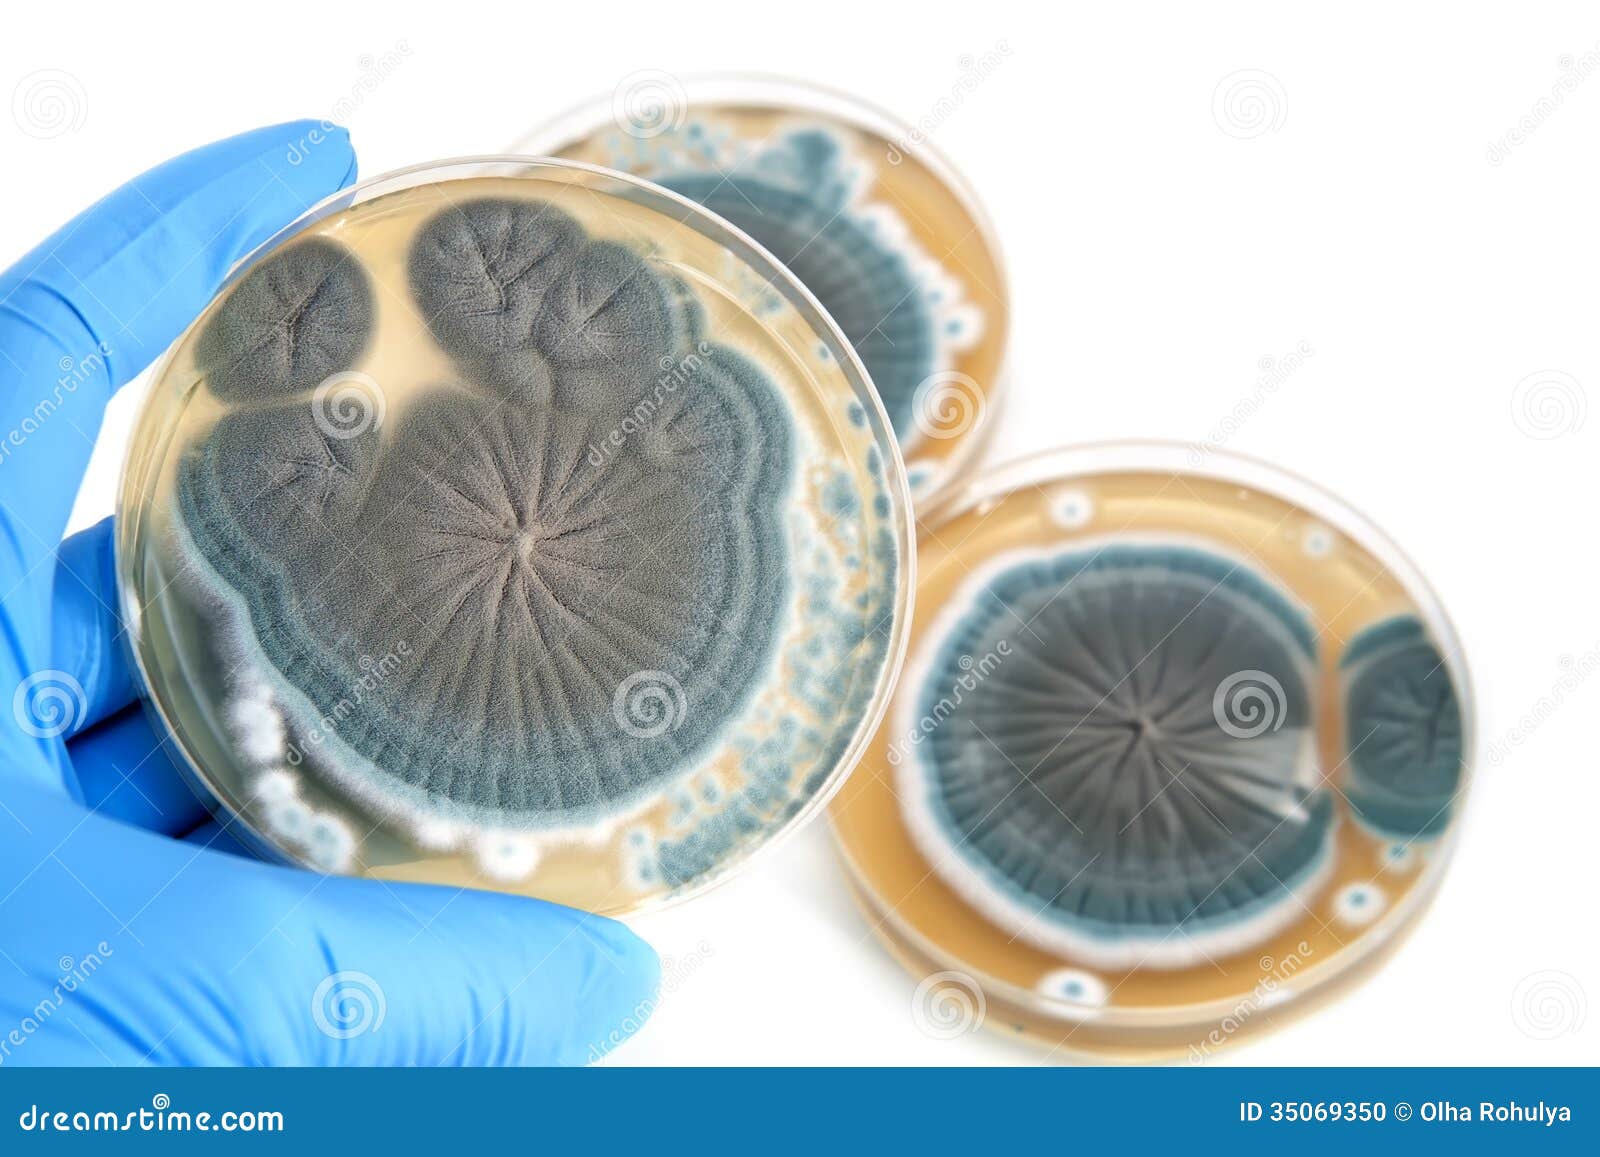 penicillium fungi on agar plate over white